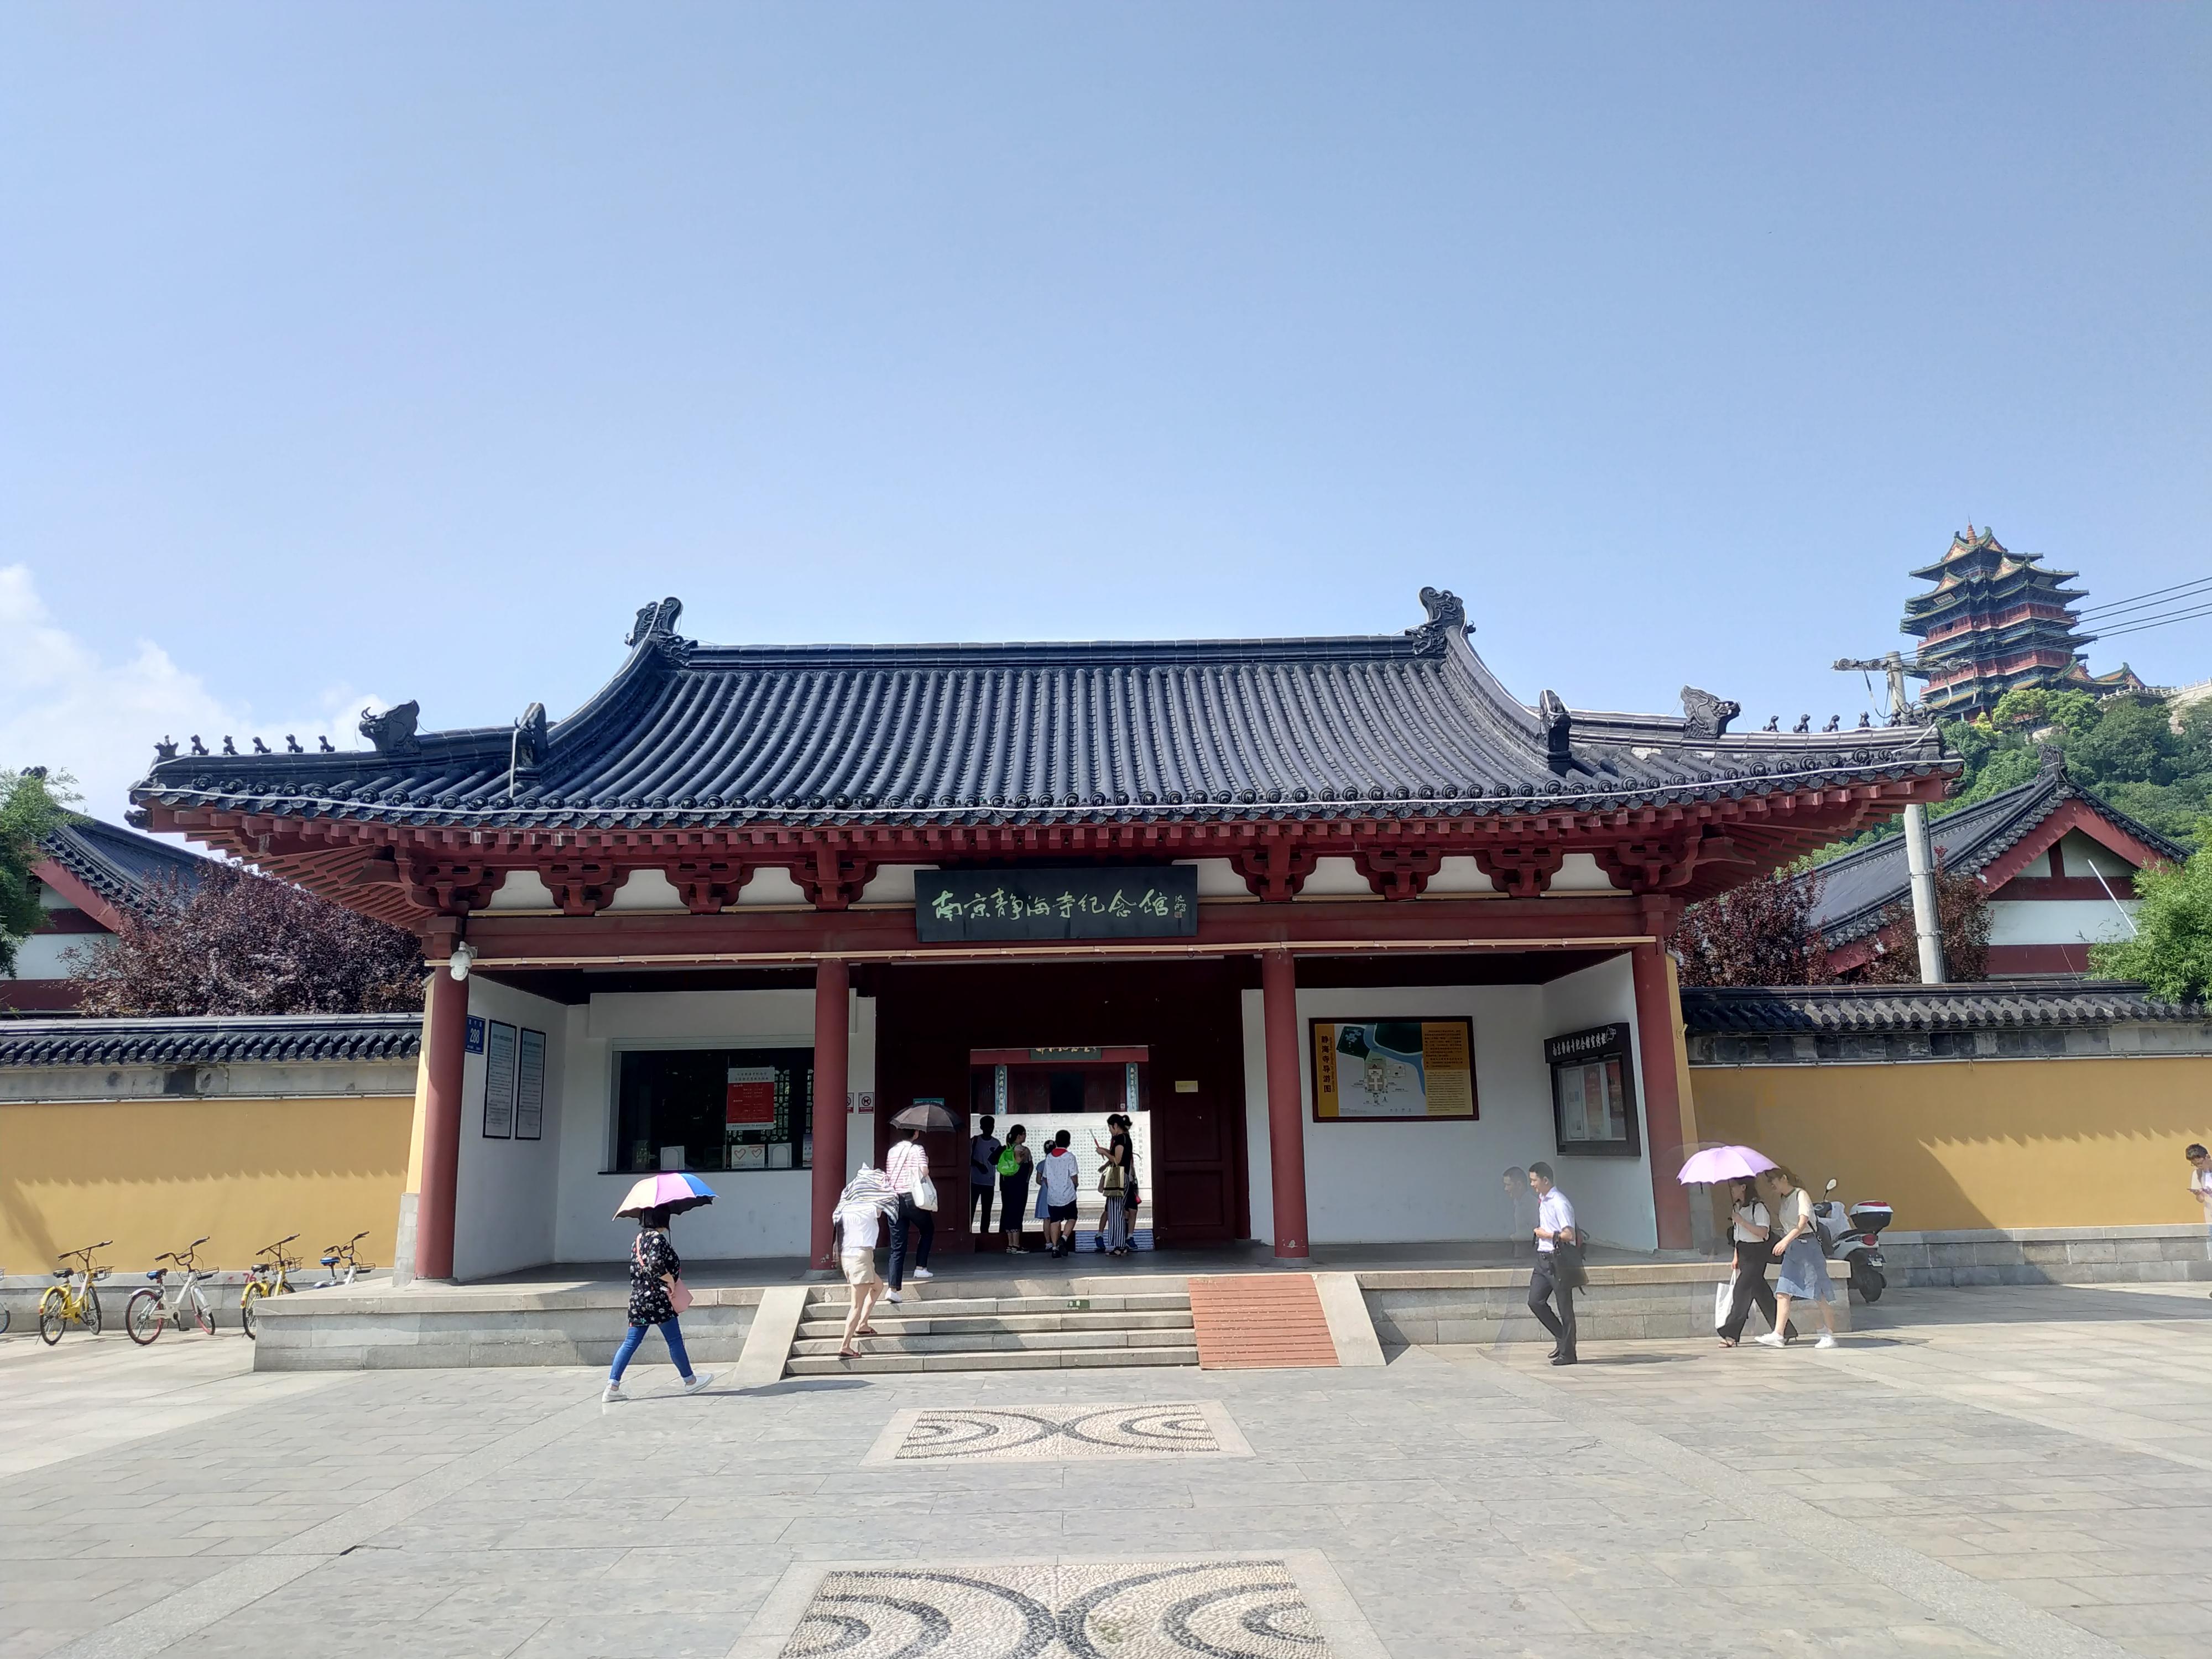 南京小众景点(二):阅江楼,静海寺,天妃宫 